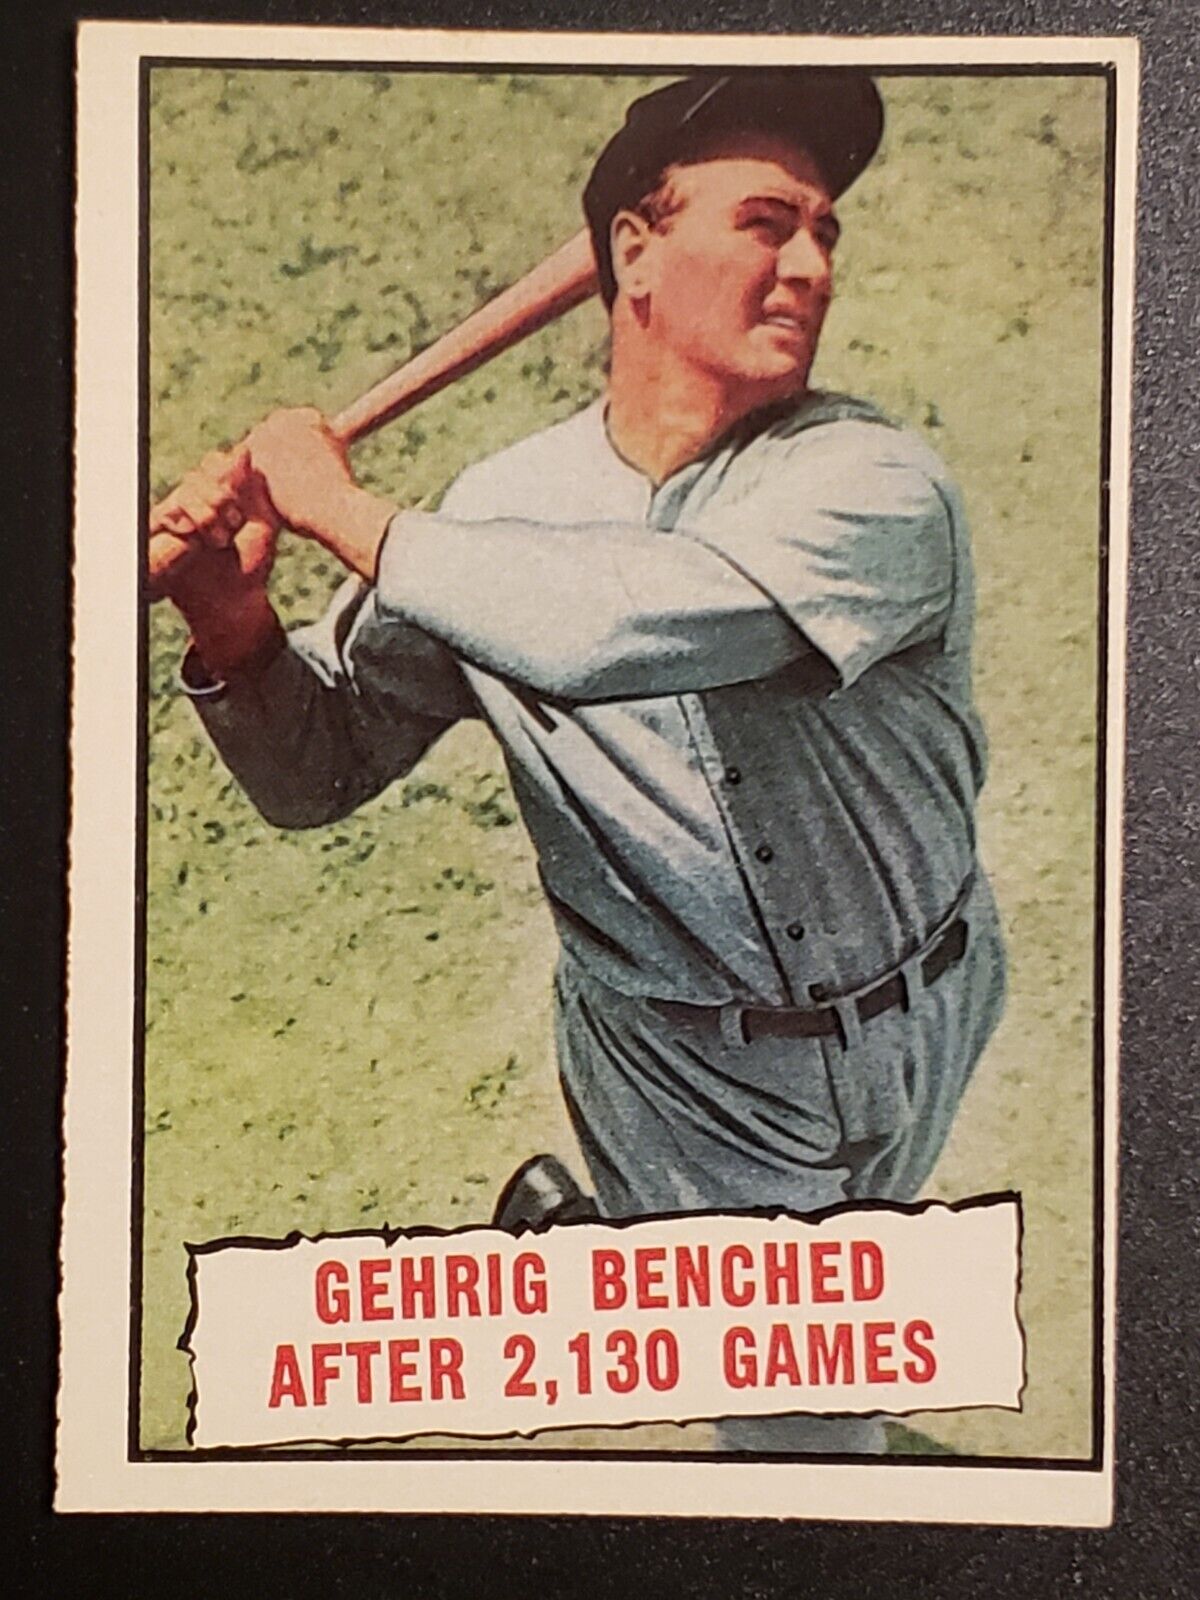 Set Break 1961 Topps Baseball EX-MT #405 Lou Gehrig Benched After 2,130 Games